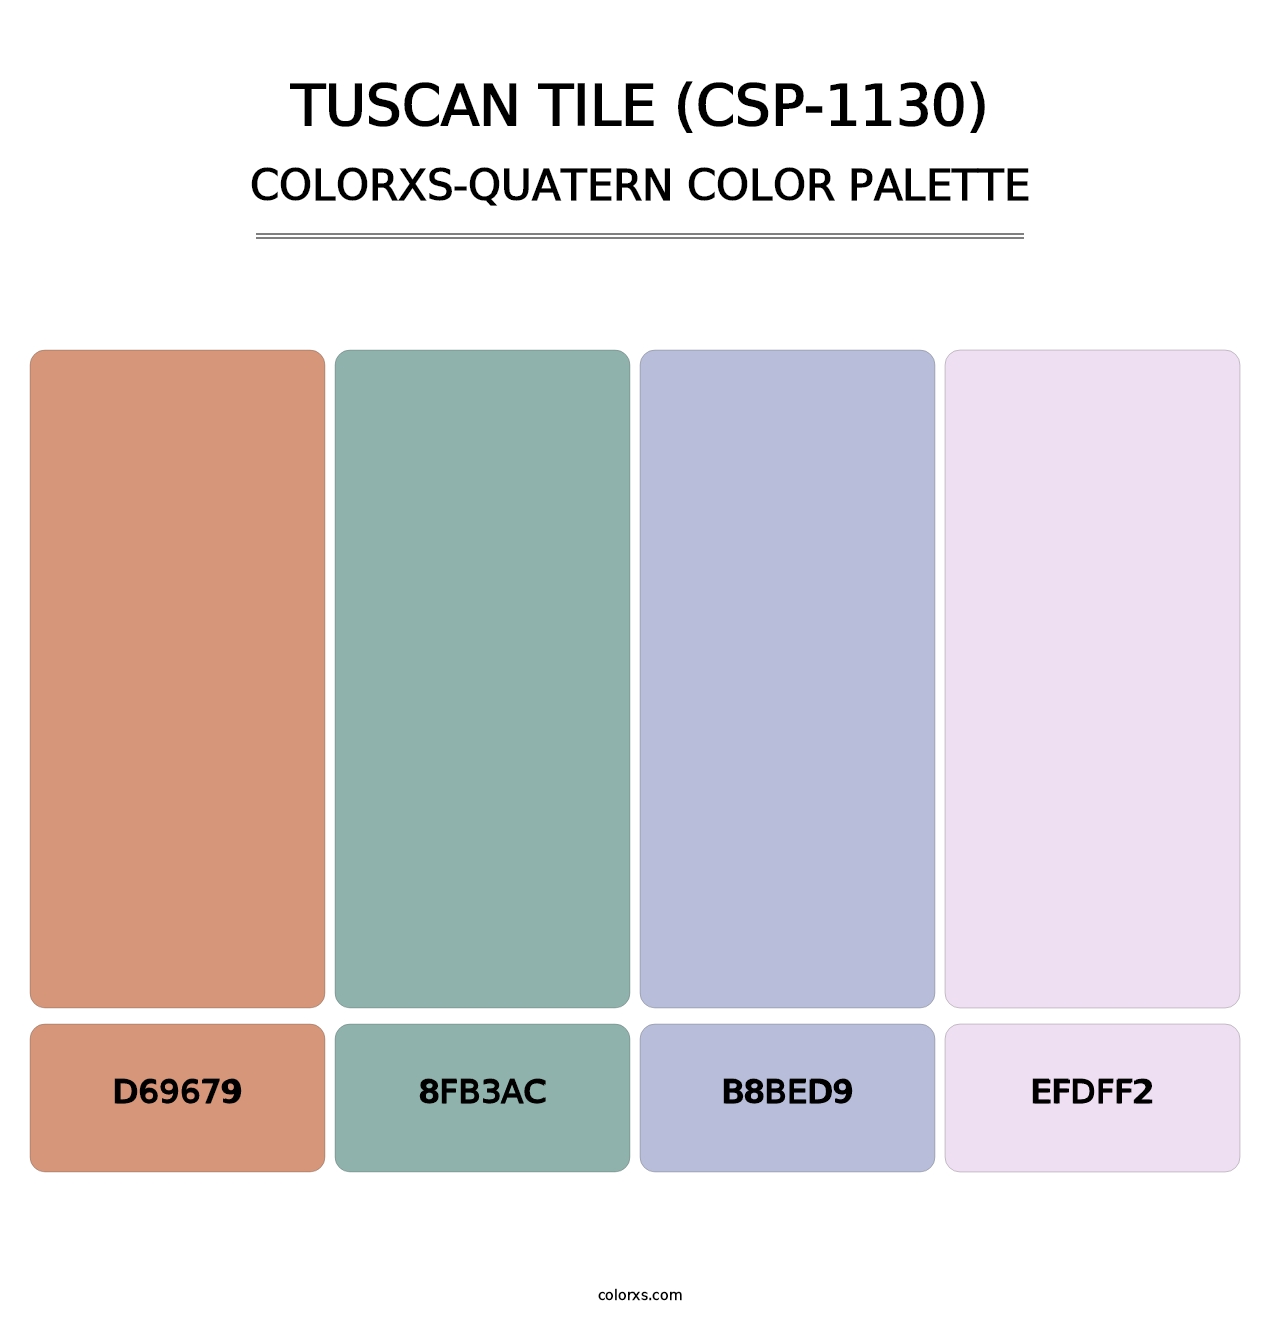 Tuscan Tile (CSP-1130) - Colorxs Quatern Palette